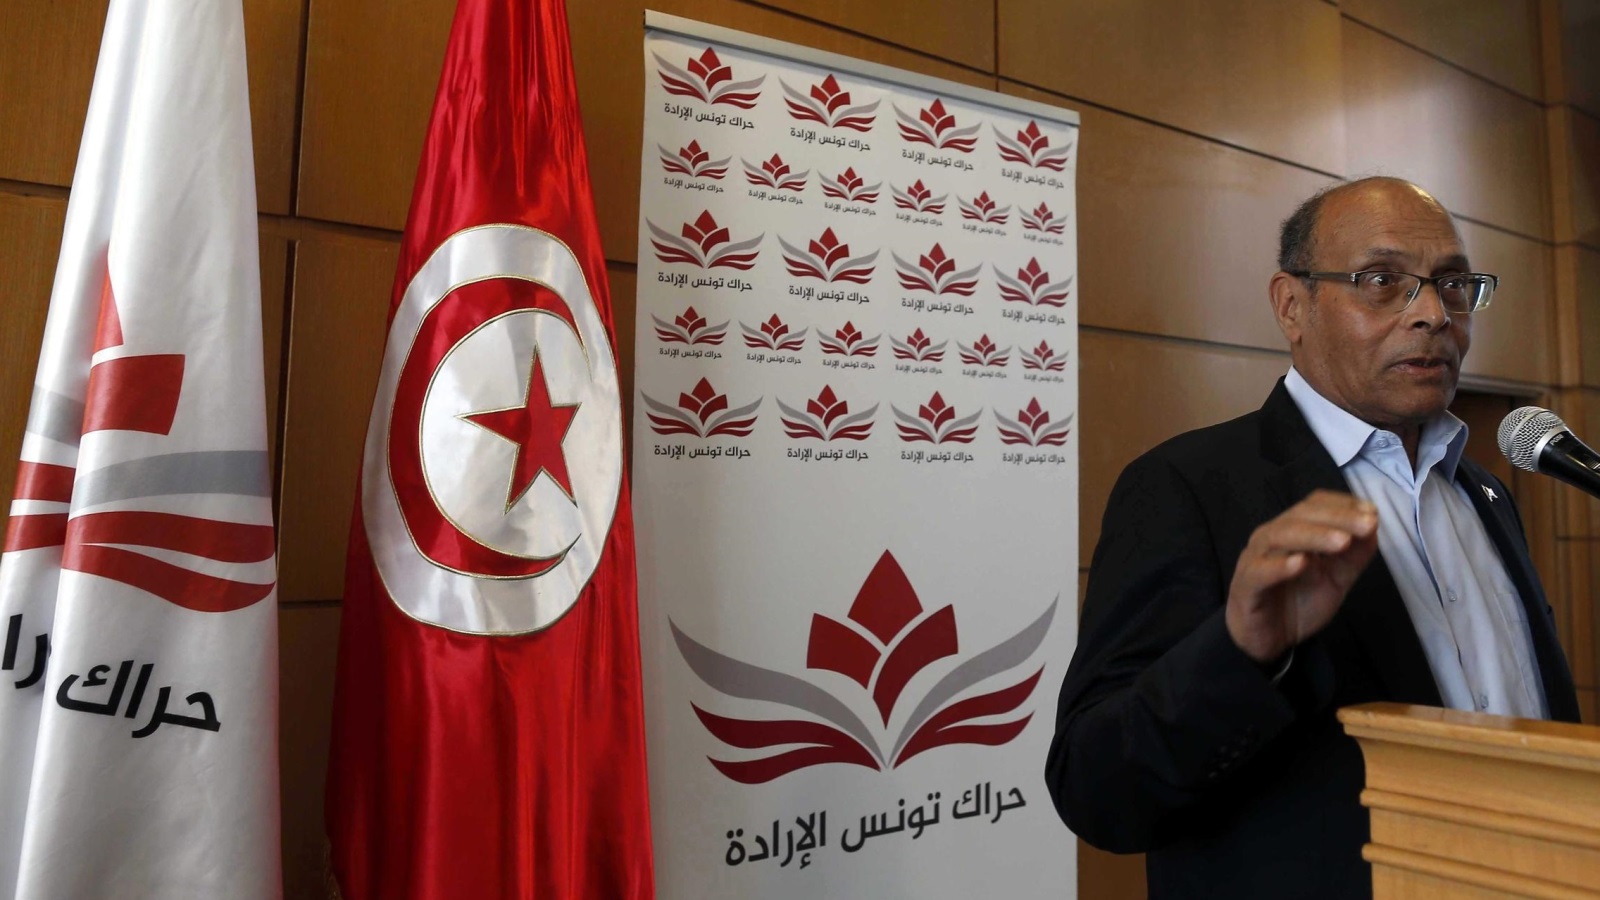 ‪(الأوروبية-أرشيف)‬ المرزوقي: الشعب التونسي لن يقبل بعودة النظام القديم بالطريقة التي يريدون